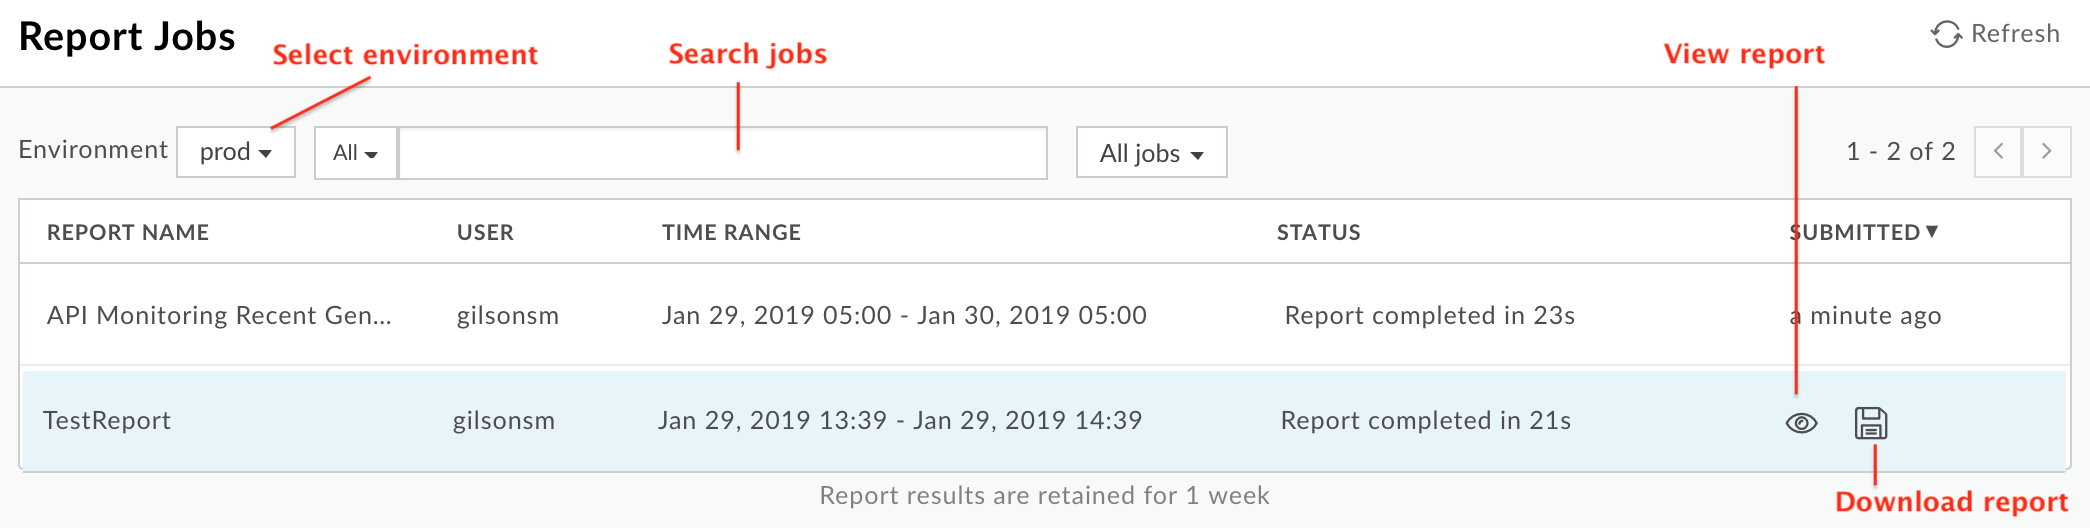 Report Jobs (Tâches de création de rapports)